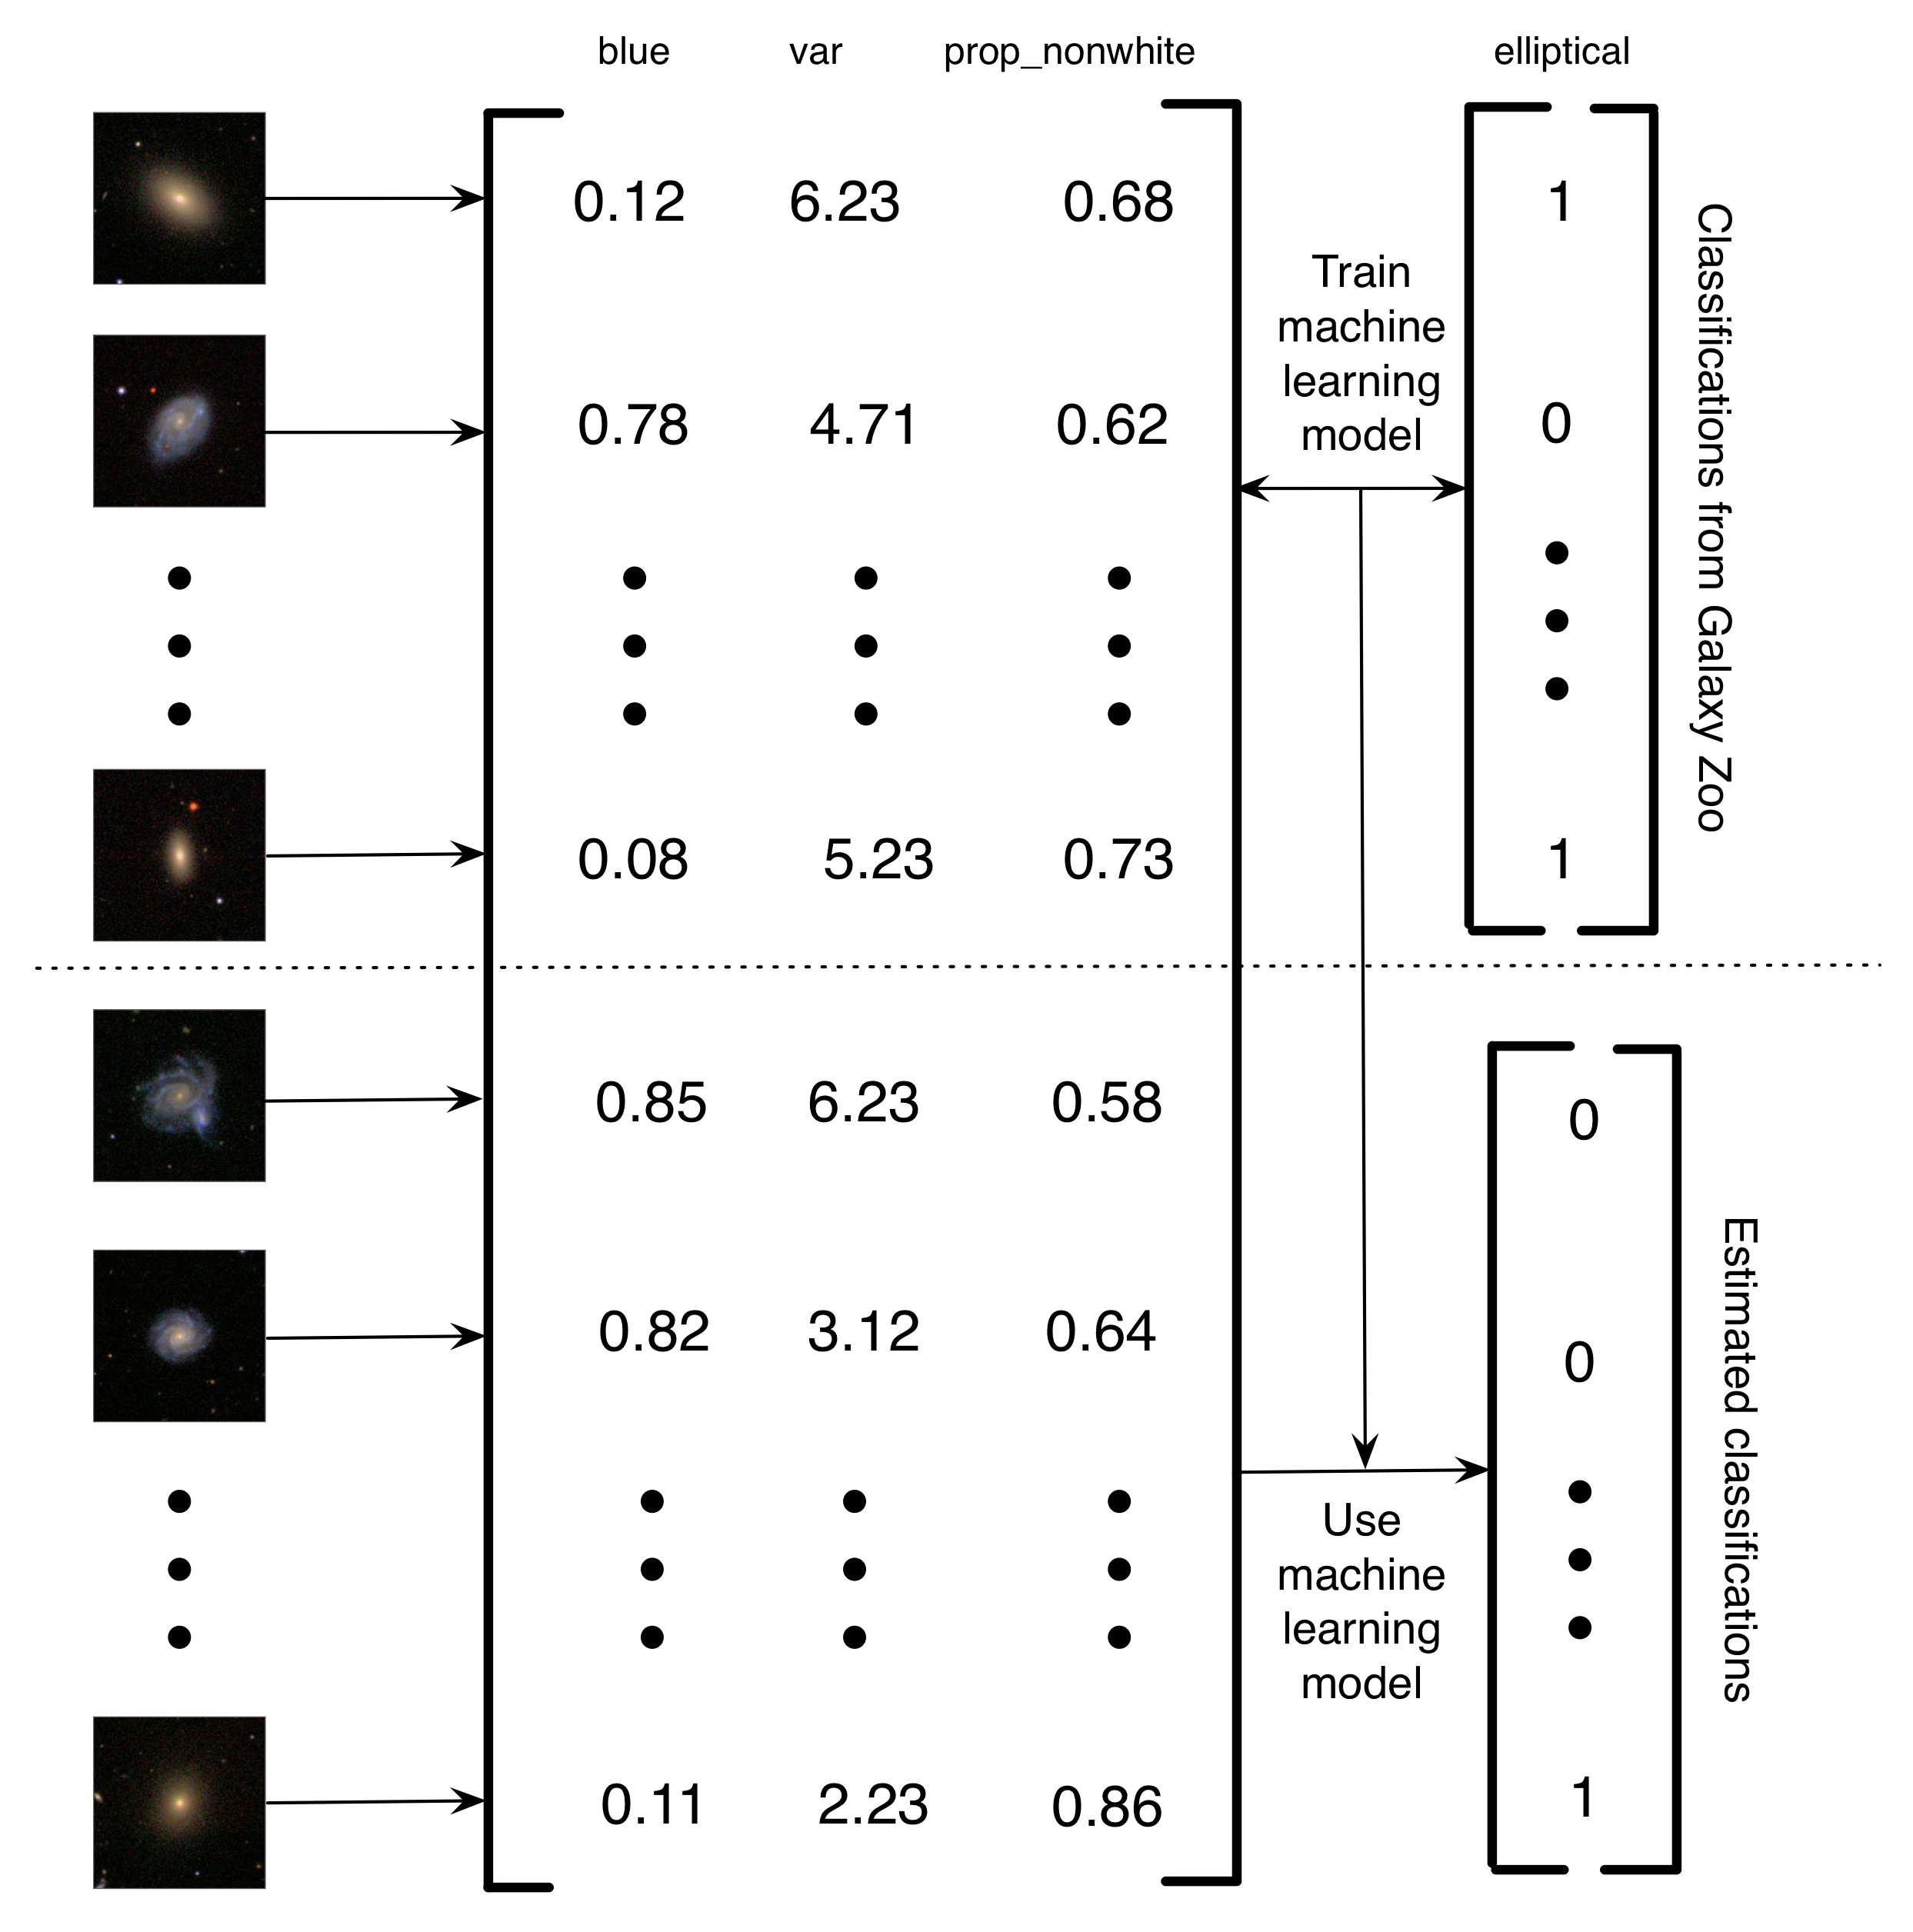 ຮູບພາບ 5.4: ລາຍລະອຽດຂອງວິທີການ Banerji et al. (2010) ໄດ້ນໍາໃຊ້ການຈັດປະເພດຂອງສັດປະເພດ Galaxy ເພື່ອຝຶກອົບຮົມຮູບແບບການຮຽນເຄື່ອງທີ່ຈະເຮັດການຈັດປະເພດ galaxy. ຮູບພາບຂອງ galaxies ໄດ້ຖືກປ່ຽນແປງໃນ matrix ຂອງລັກສະນະເປັນ. ໃນຕົວຢ່າງງ່າຍດາຍນີ້, ມີສາມລັກສະນະ (ຈໍານວນສີຟ້າໃນຮູບພາບ, ຄວາມແຕກຕ່າງໃນຄວາມສະຫວ່າງຂອງ pixels ແລະອັດຕາສ່ວນຂອງ pixels ທີ່ບໍ່ແມ່ນສີຂາວ). ຫຼັງຈາກນັ້ນ, ສໍາລັບຊຸດຂອງຮູບພາບ, ປ້າຍ Galaxy Zoo ໄດ້ຖືກນໍາໃຊ້ເພື່ອຝຶກອົບຮົມຮູບແບບການຮຽນເຄື່ອງ. ສຸດທ້າຍ, ການຮຽນຮູ້ຂອງເຄື່ອງຈັກແມ່ນໄດ້ຖືກນໍາໃຊ້ເພື່ອປະມານການຄາດຄະເນສໍາລັບ galaxies ທີ່ຍັງເຫຼືອ. ຂ້າພະເຈົ້າເອີ້ນວ່າໂຄງການຄອມພິວເຕີ້ທີ່ຊ່ວຍໃຫ້ຄອມພິວເຕີຊ່ວຍເຫຼືອເພາະວ່າ, ແທນທີ່ຈະມີມະນຸດແກ້ໄຂບັນຫາ, ມັນກໍ່ມີມະນຸດສ້າງຊຸດຂໍ້ມູນທີ່ສາມາດນໍາໃຊ້ຄອມພິວເຕີເພື່ອແກ້ໄຂບັນຫາໄດ້. ປະໂຫຍດຂອງລະບົບການຄິດໄລ່ຂອງມະນຸດທີ່ຊ່ວຍໃຫ້ຄອມພິວເຕີ້ນີ້ແມ່ນມັນຊ່ວຍໃຫ້ທ່ານສາມາດຈັດການຂໍ້ມູນທີ່ບໍ່ຈໍາກັດຈໍານວນຂໍ້ມູນໂດຍໃຊ້ພຽງແຕ່ຄວາມພະຍາຍາມຂອງມະນຸດເທົ່ານັ້ນ. ຮູບພາບຂອງ galaxies reproduced ໂດຍການອະນຸຍາດຈາກ Sloan Digital Sky Survey.